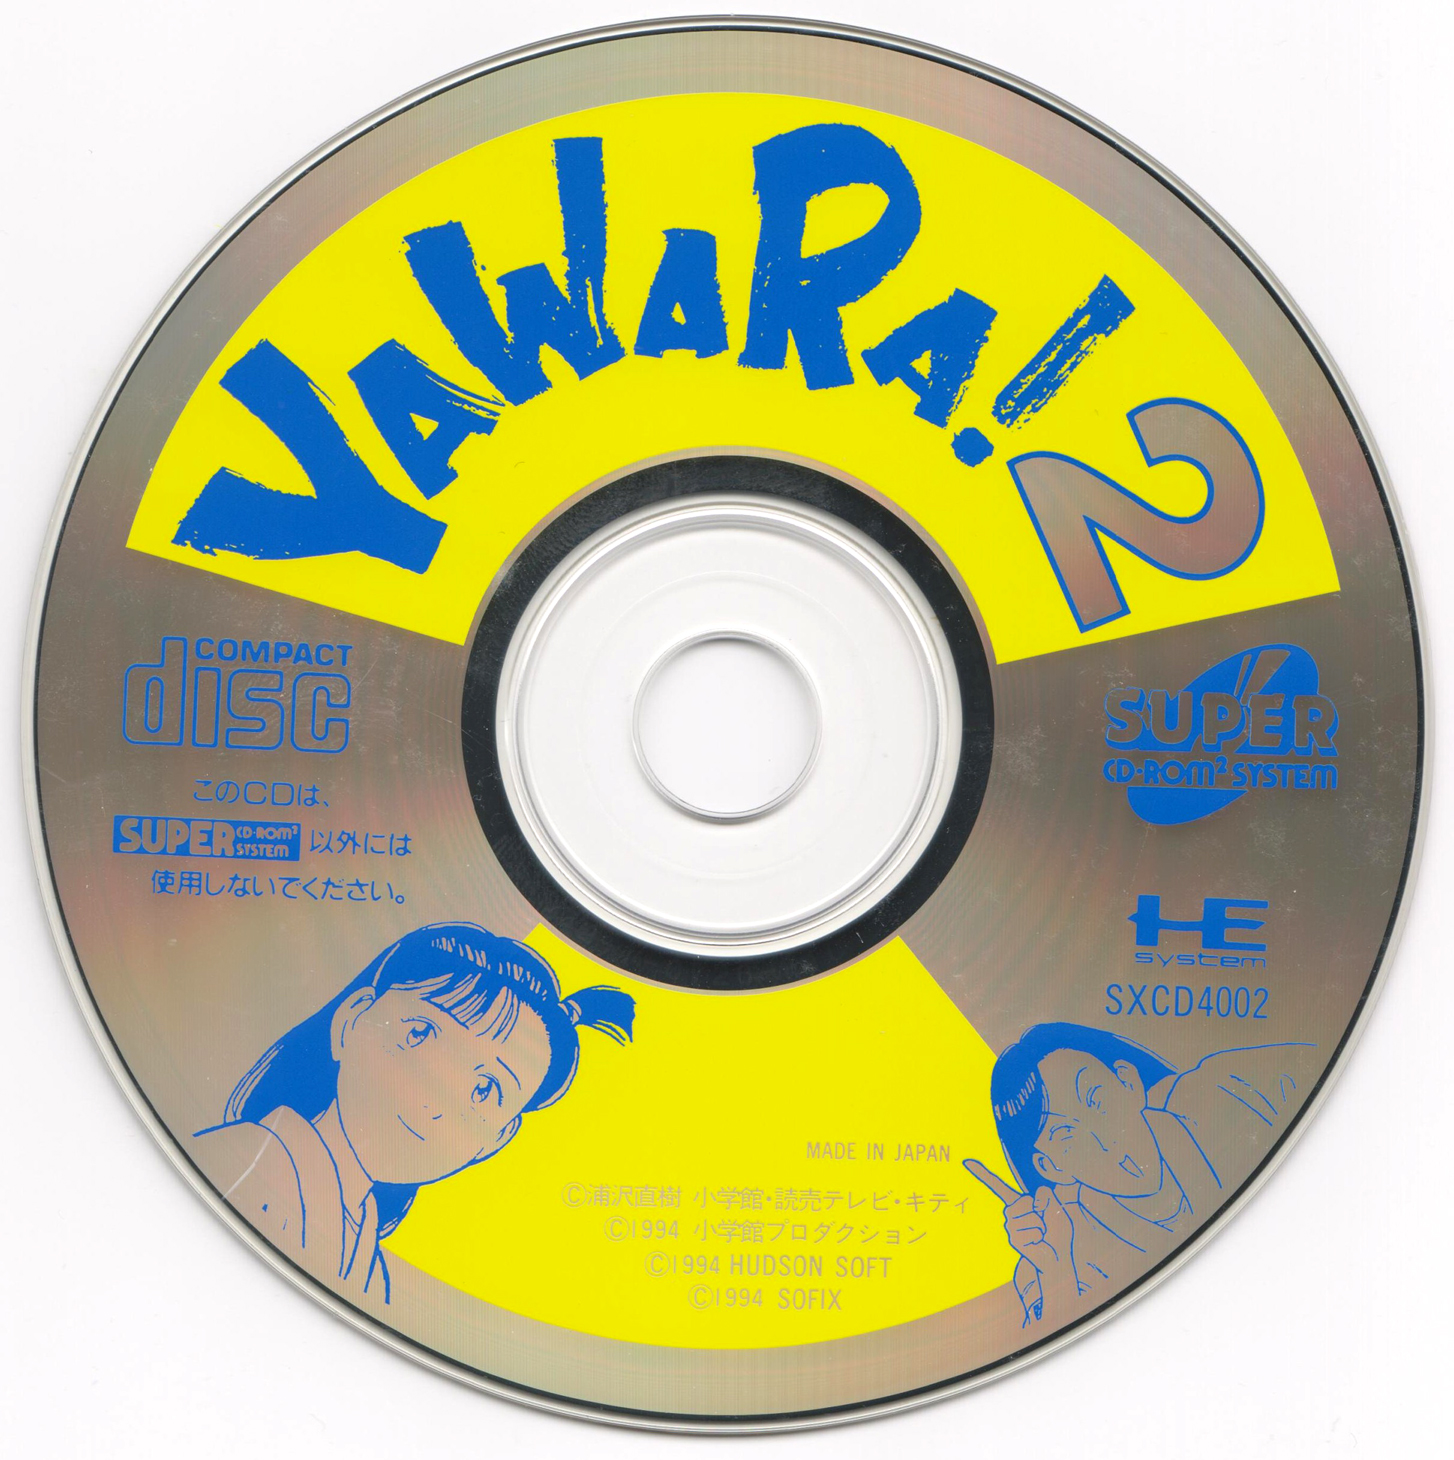 Yawara! 2 - The PC Engine Software Bible